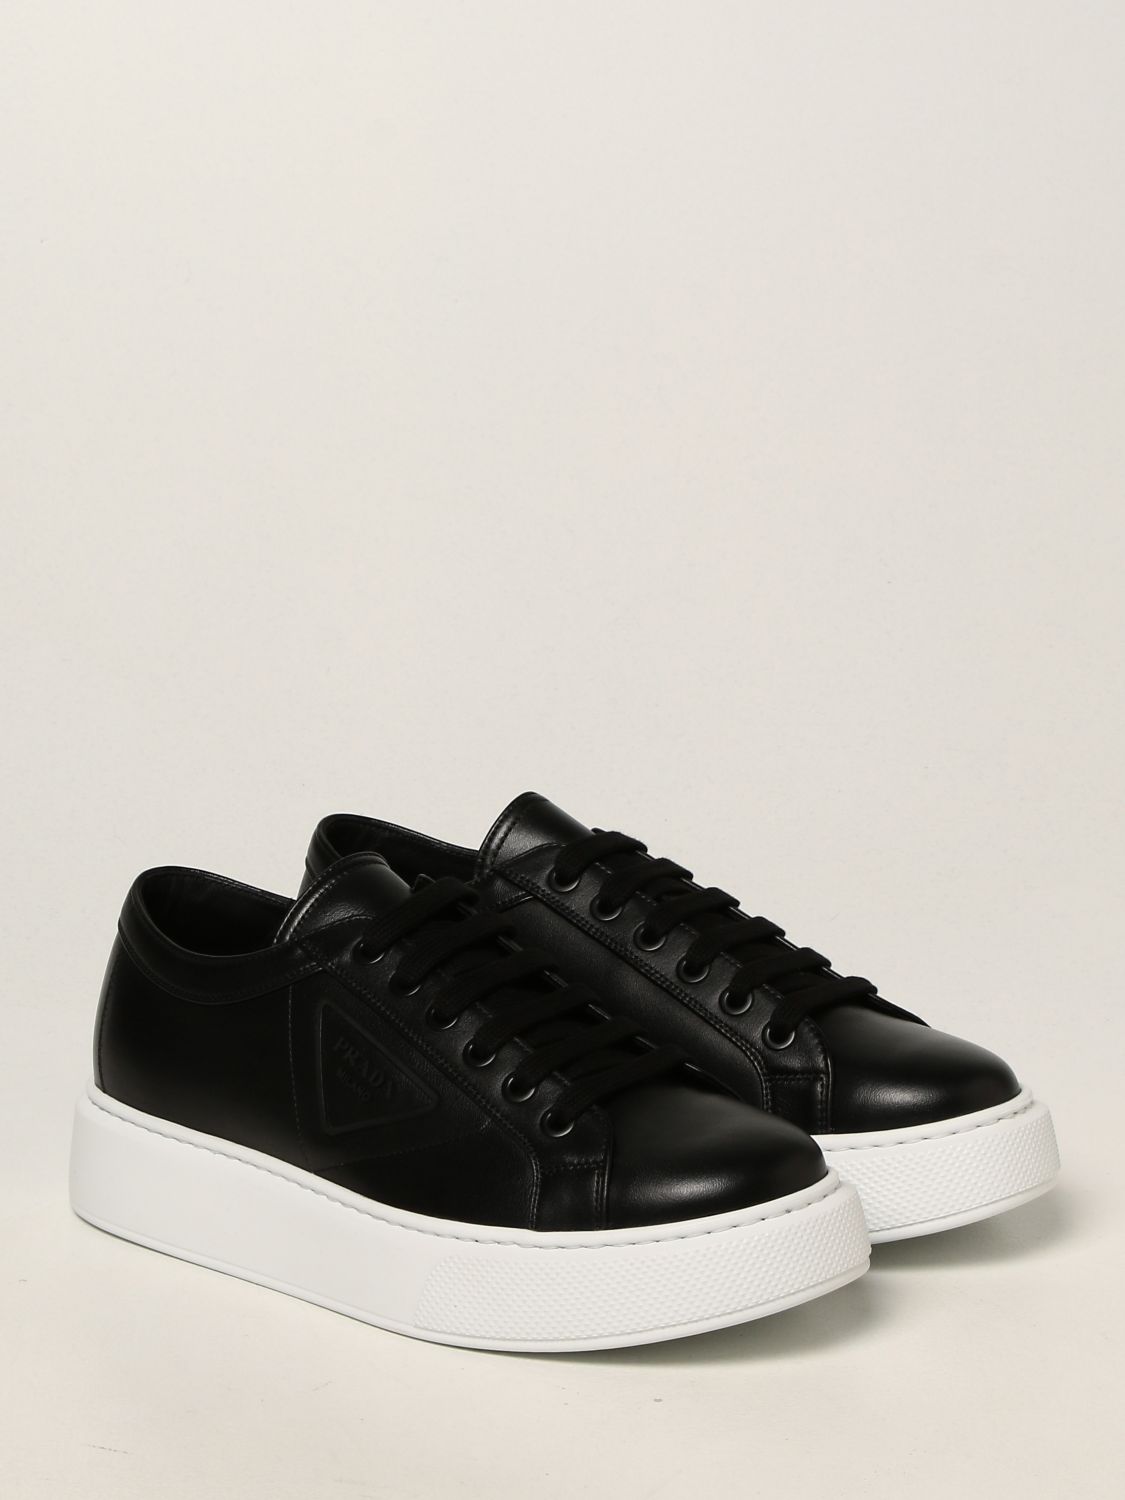 Sneakers Prada: Prada leather sneakers black 2